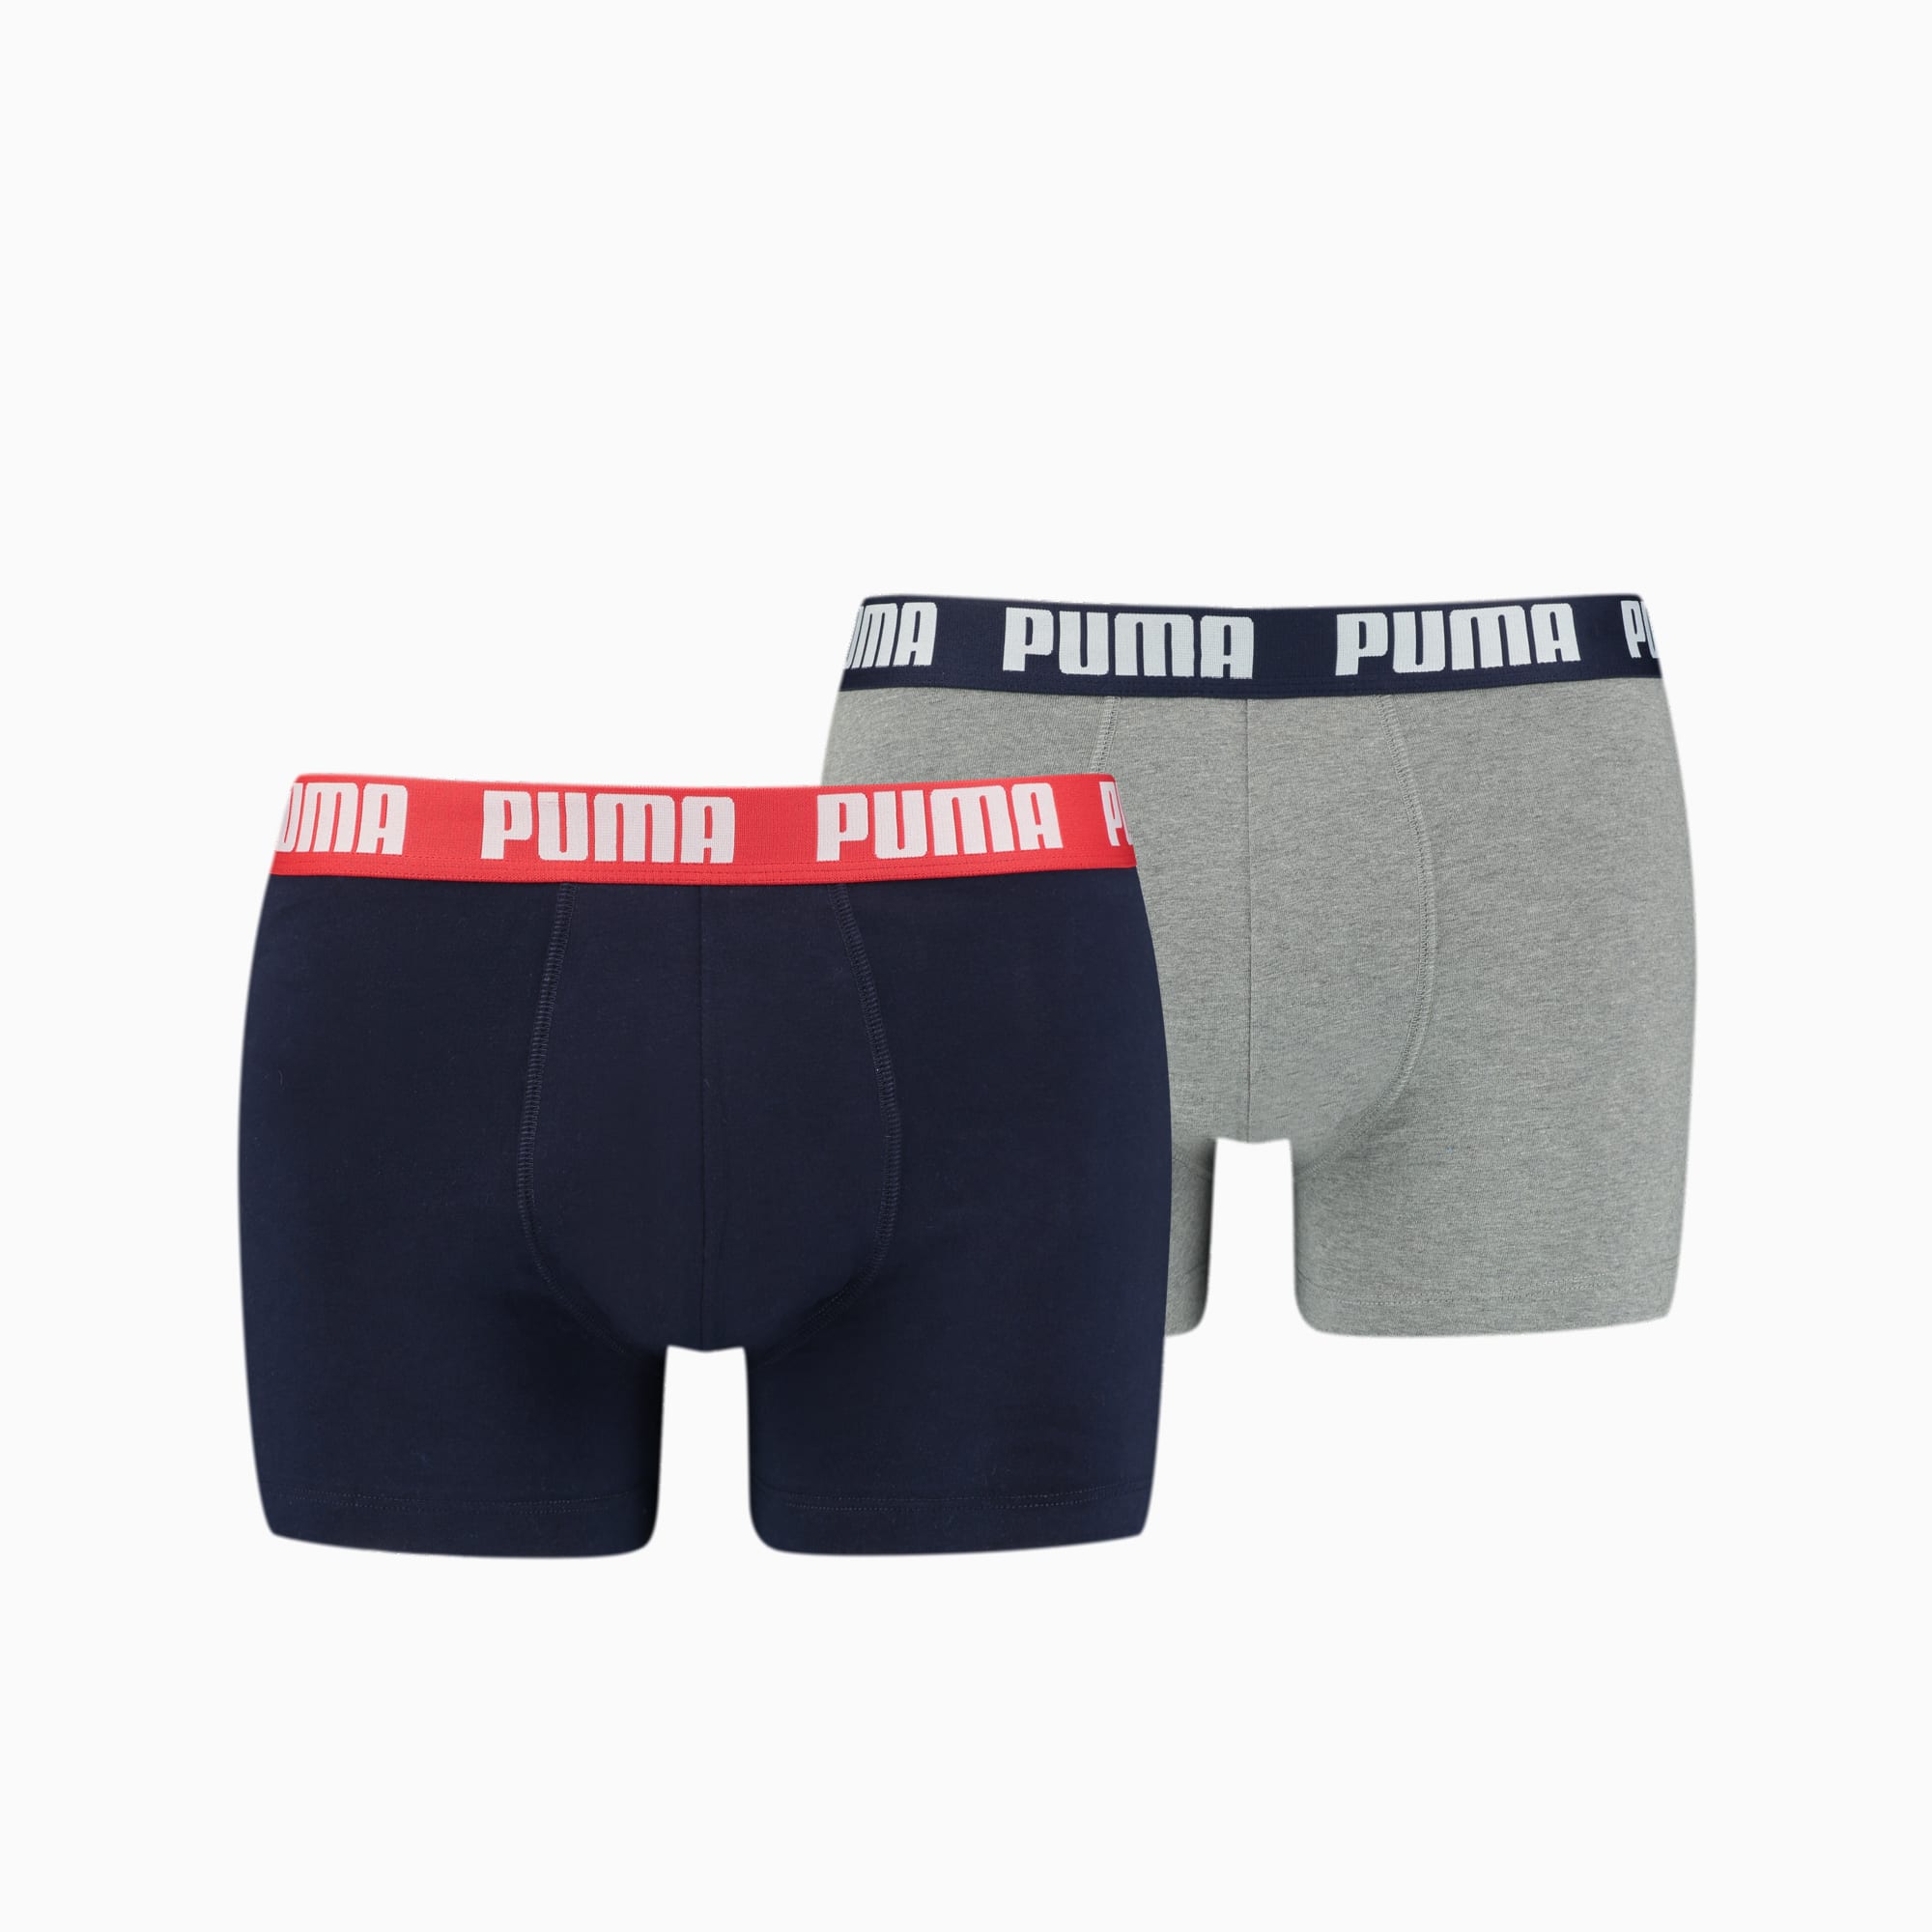 PUMA Basic Boxershorts Herren 2er-Pack, Mit Grau Melange, Grau/Blau, Größe: XL, Kleidung